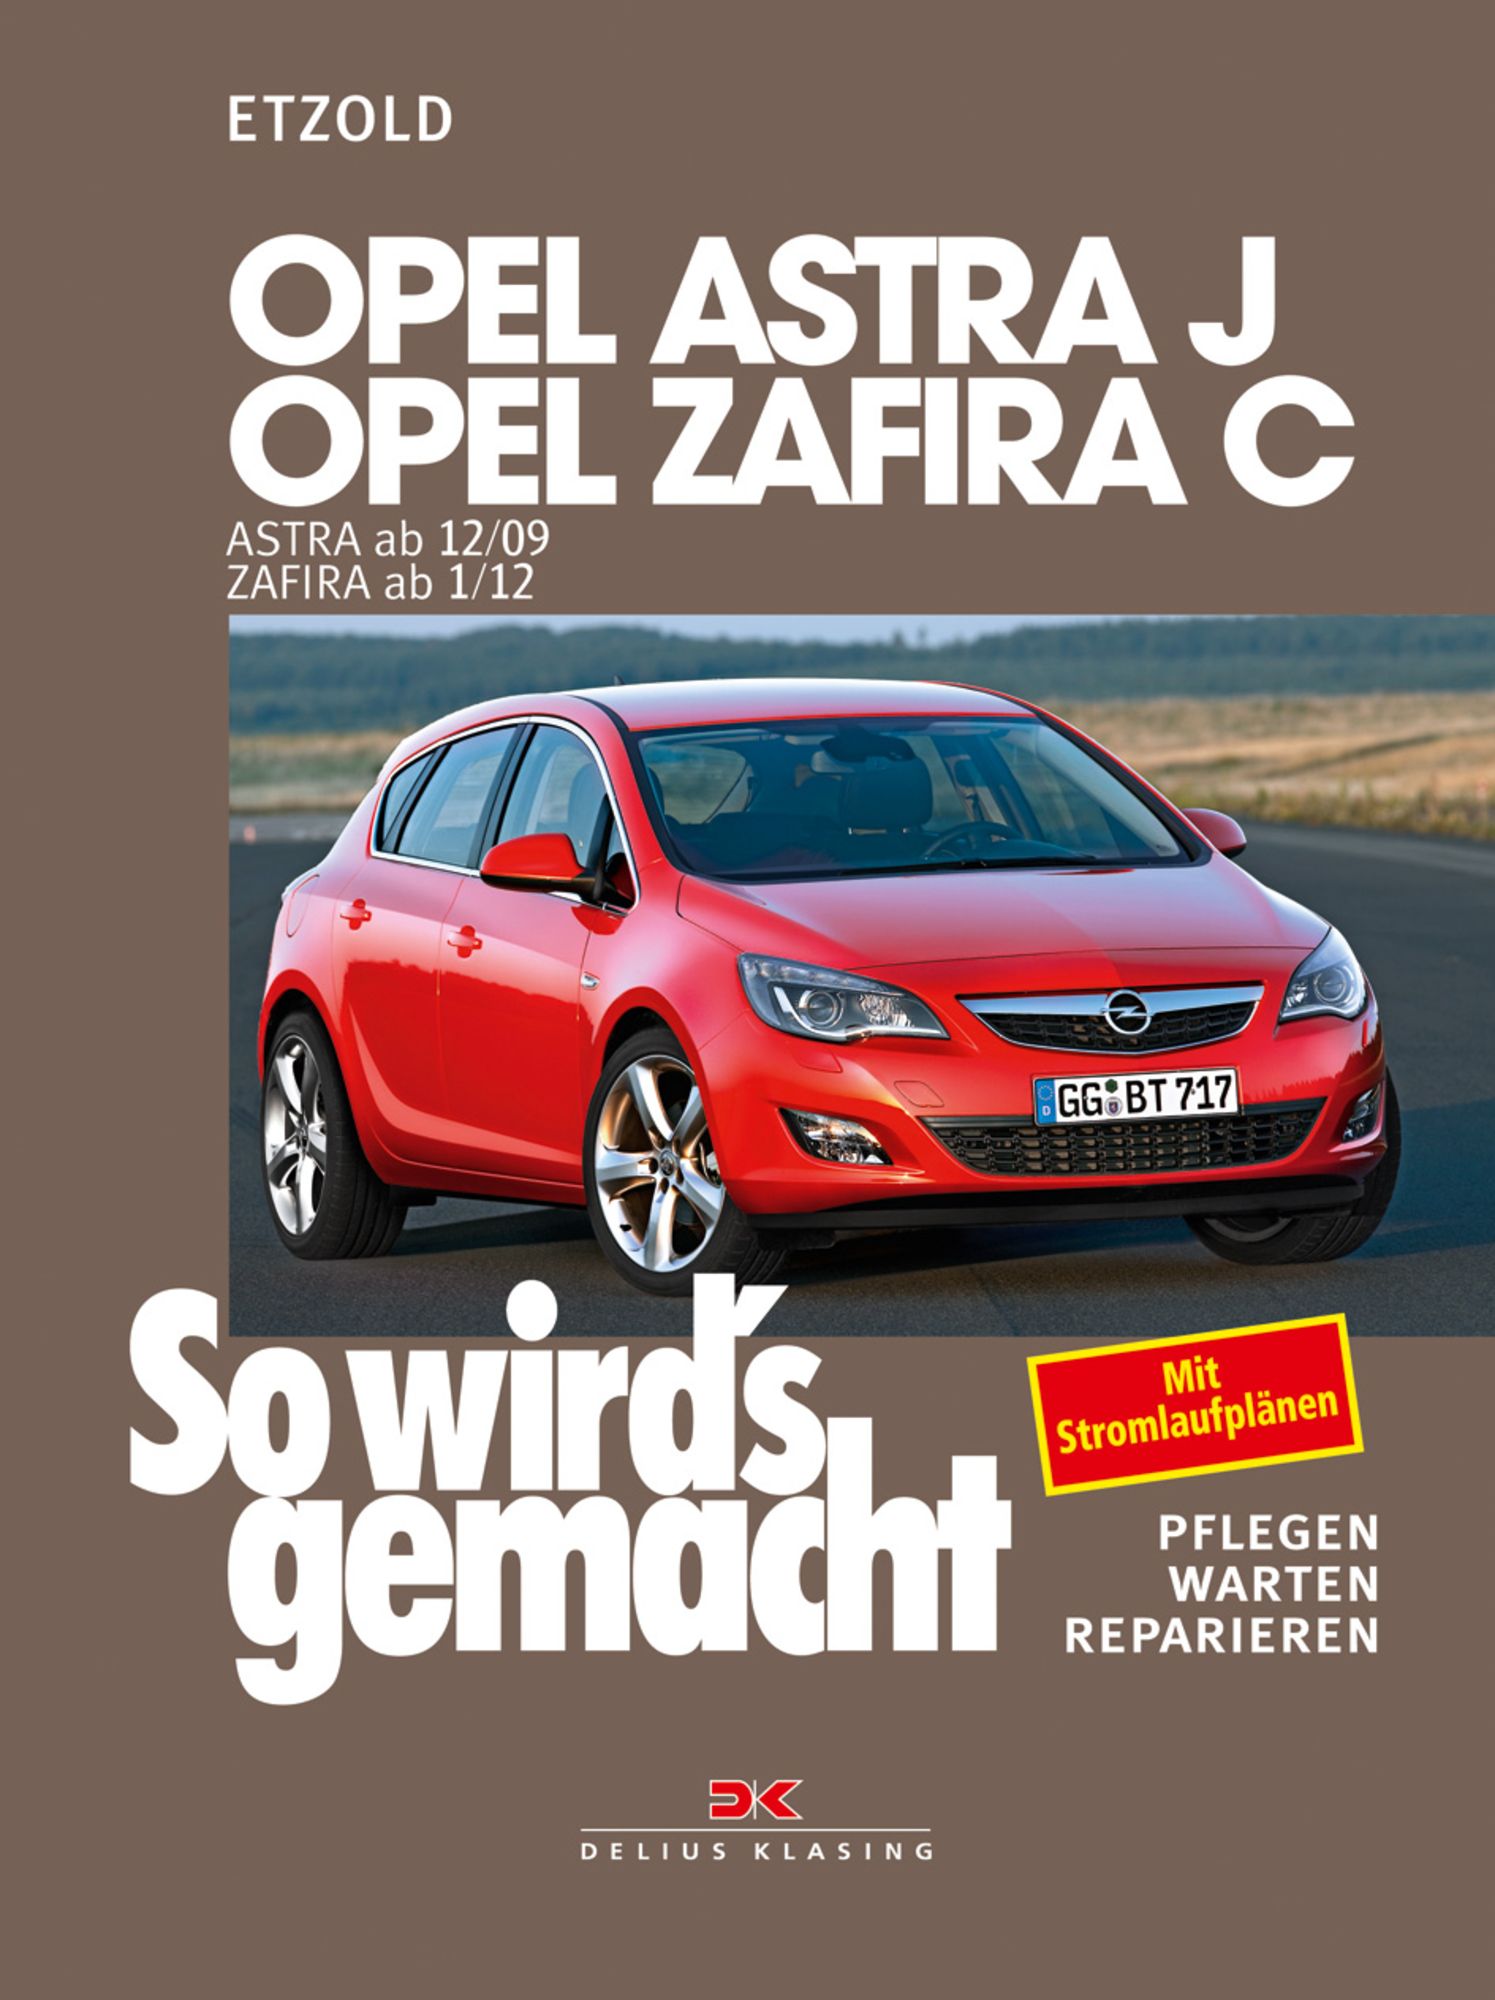 Opel Astra J von 12/09 bis 9/15, Opel Zafira C ab 1/12' von